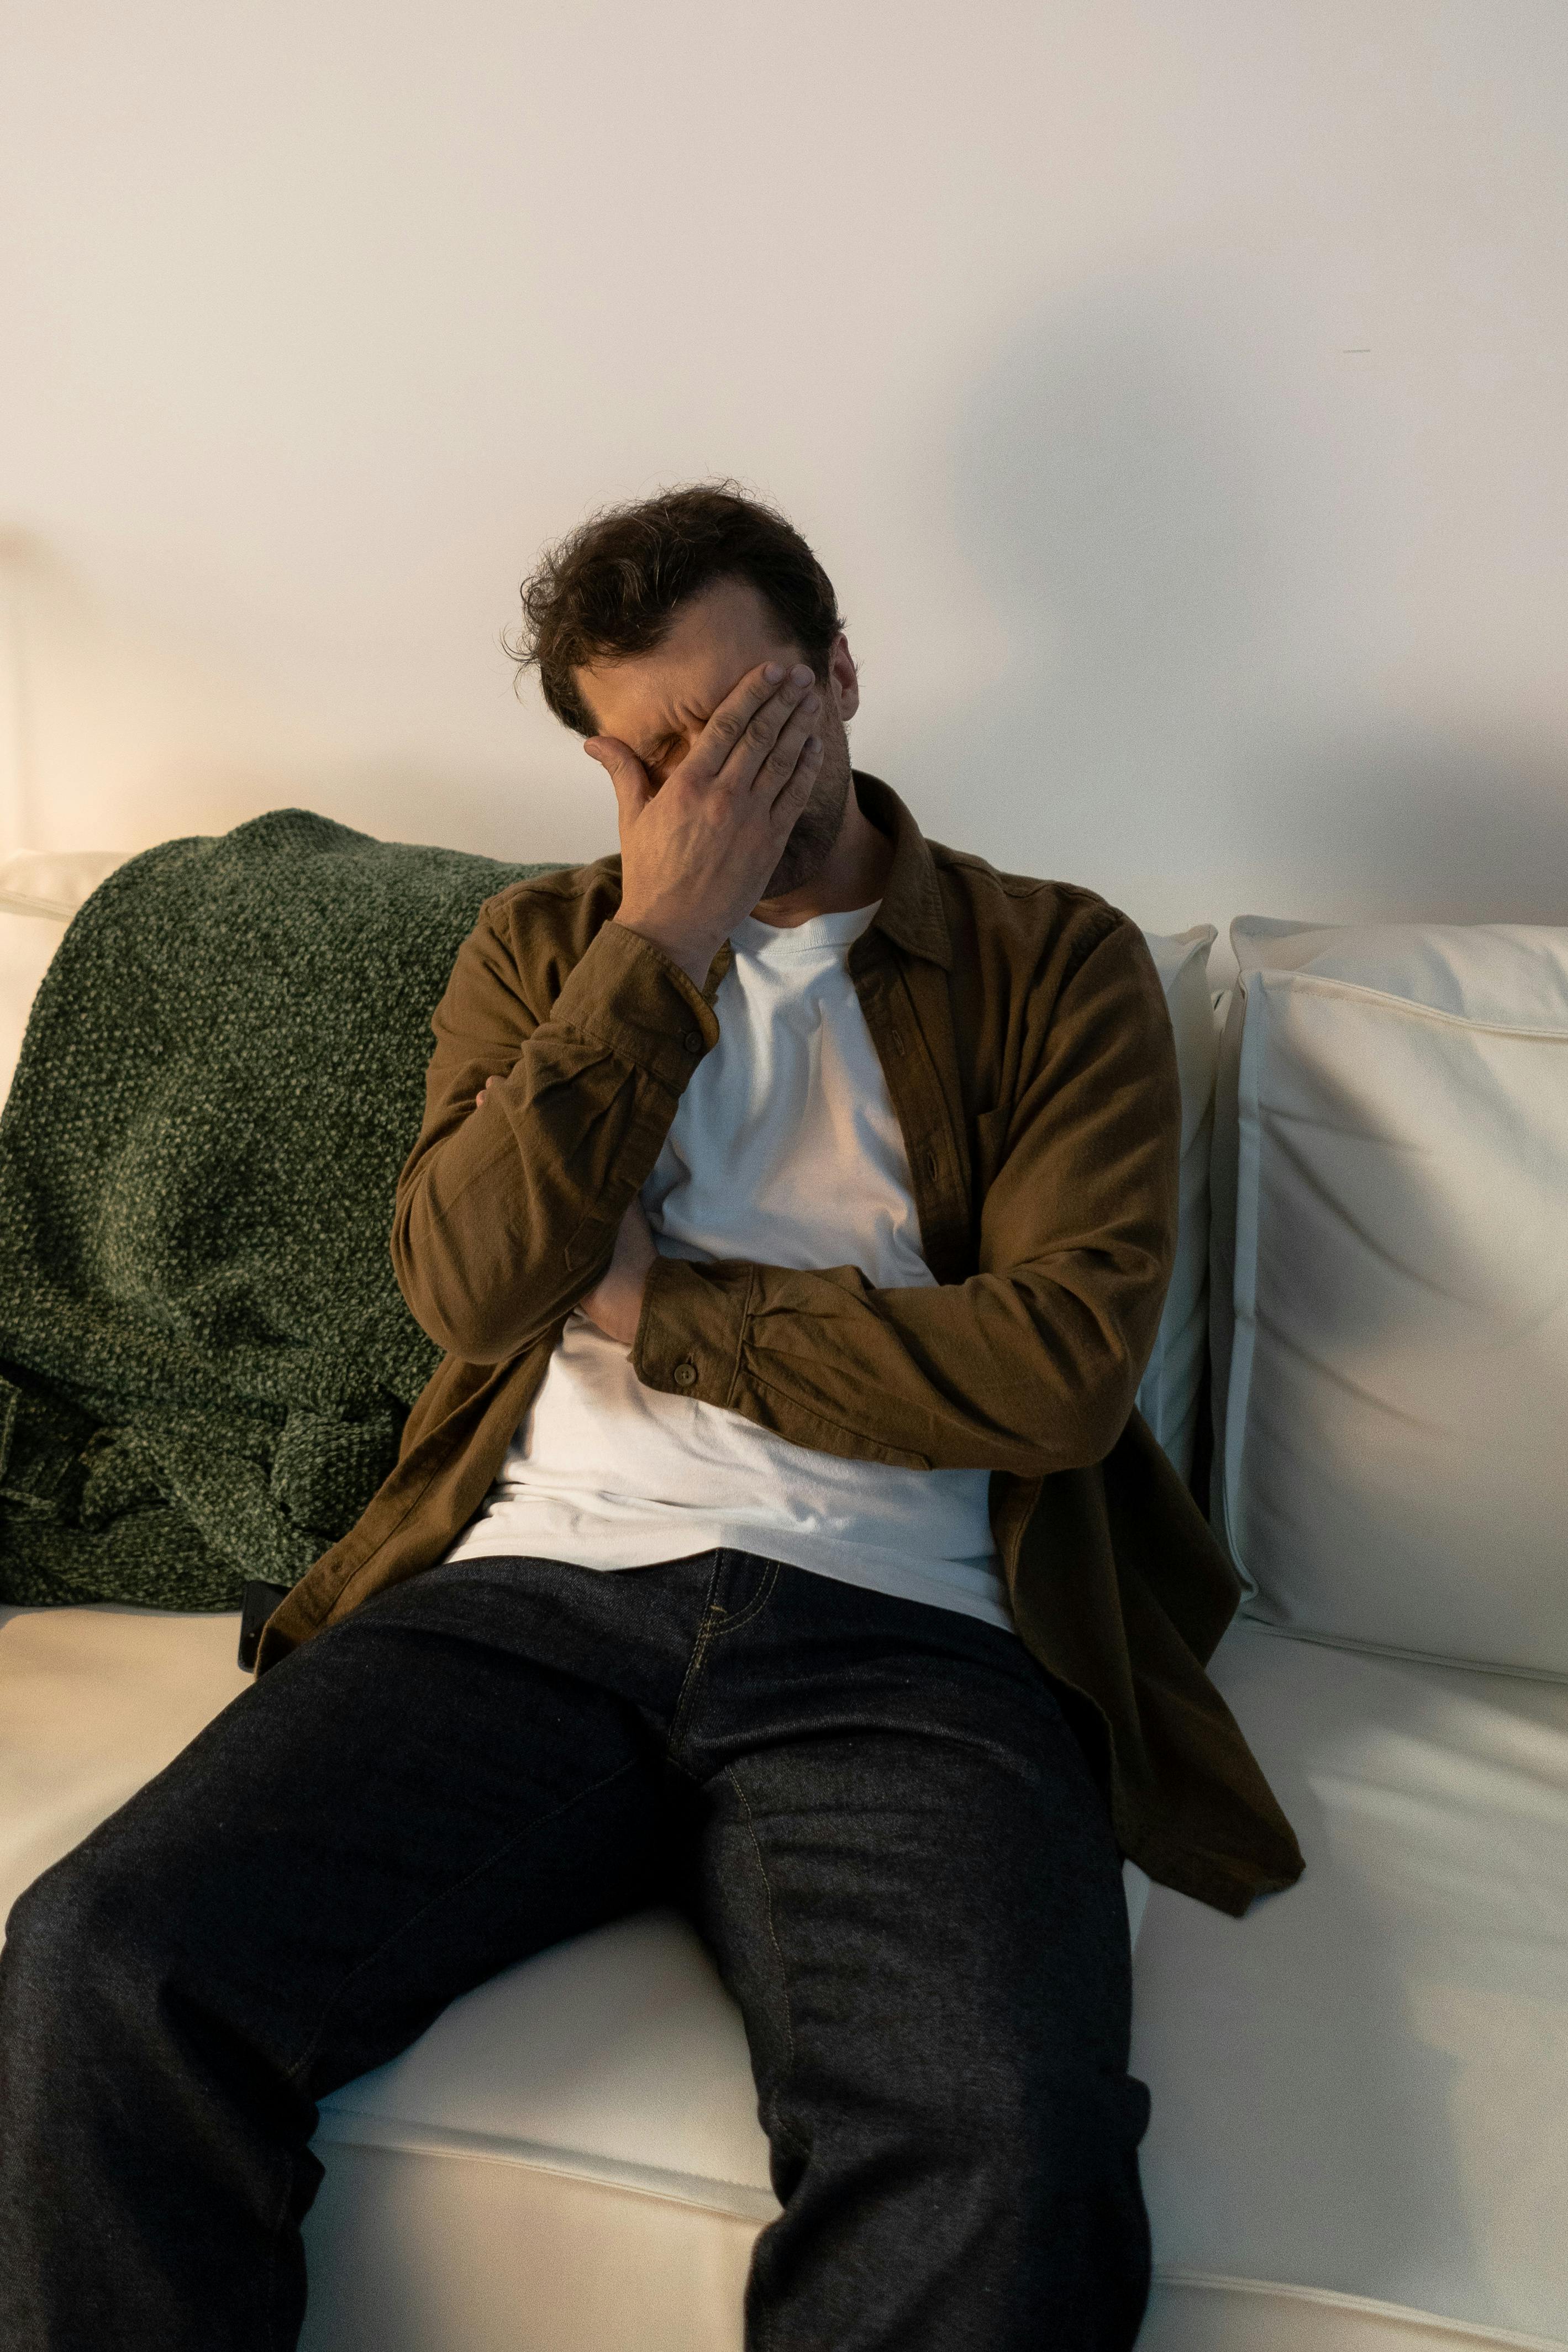 Ein verzweifelter Mann sitzt auf einer Couch | Quelle: Pexels